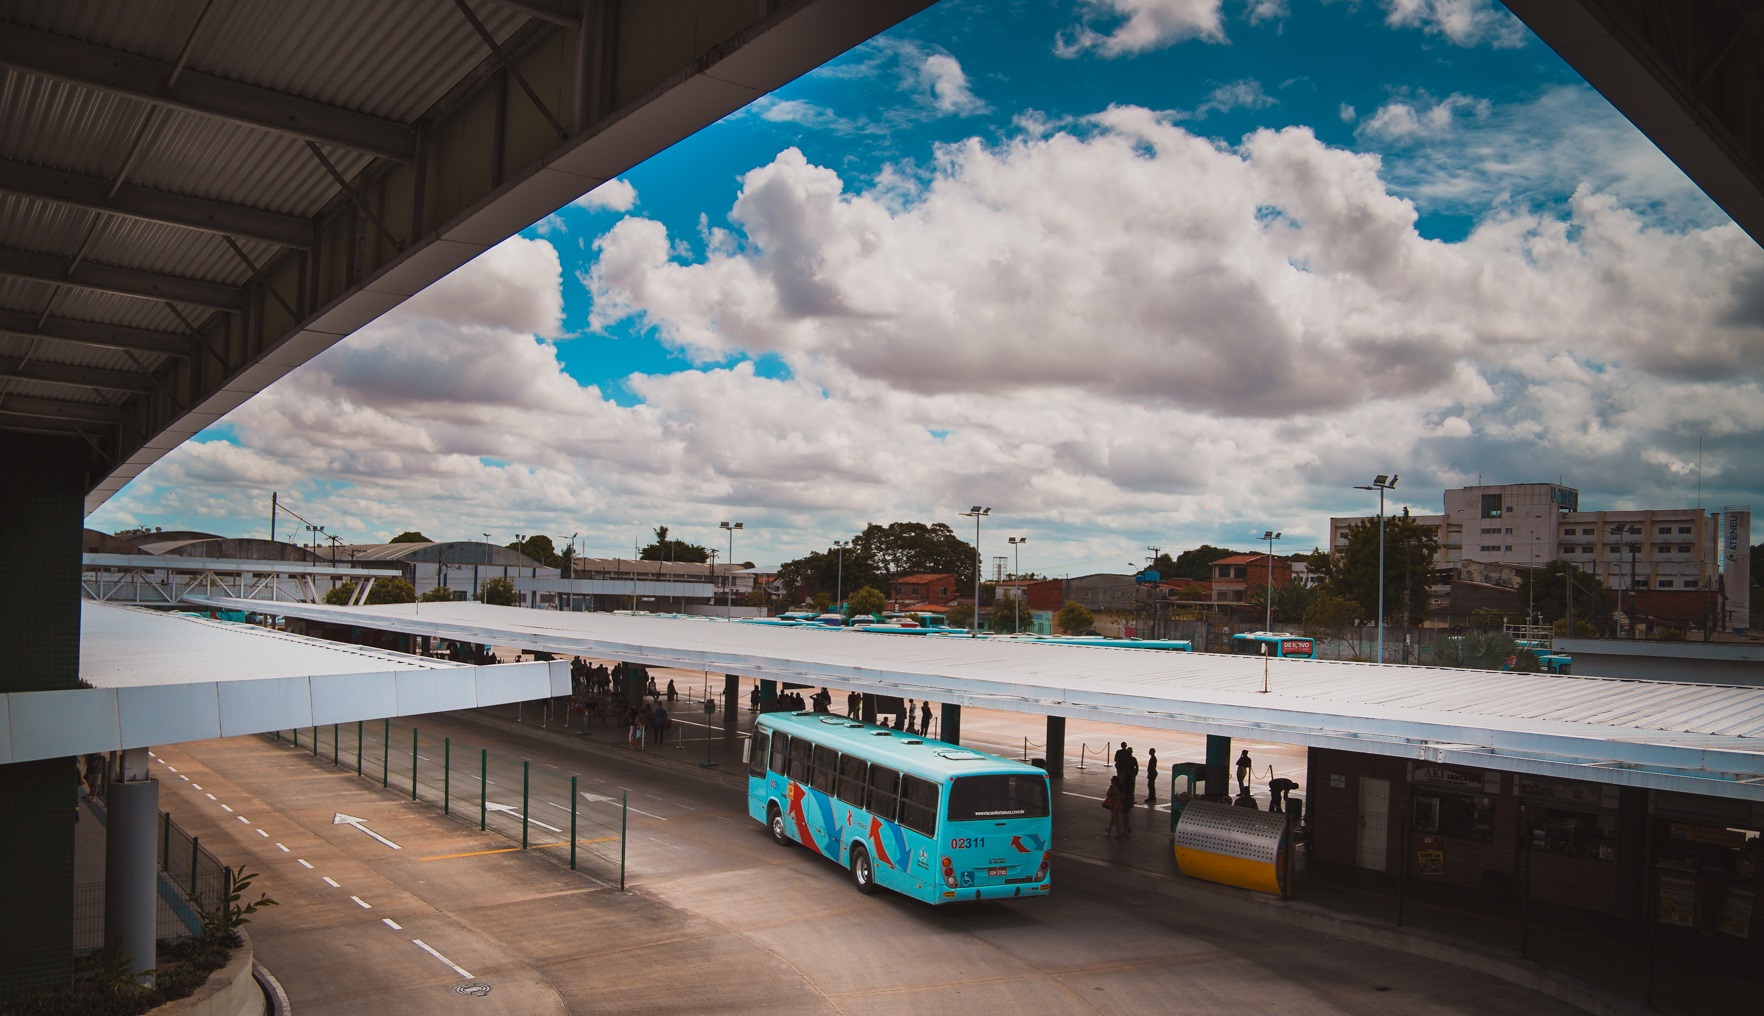 Fortaleza, la cuarta ciudad más poblada de Brasil, capital del Estado de Ceará, busca una Asociación Público-Privada para gestionar las inversiones en 10 terminales urbanas y dos corredores estructurados de transporte público. Se esperan ahorros de 66,97 millones de dólares durante 30 años